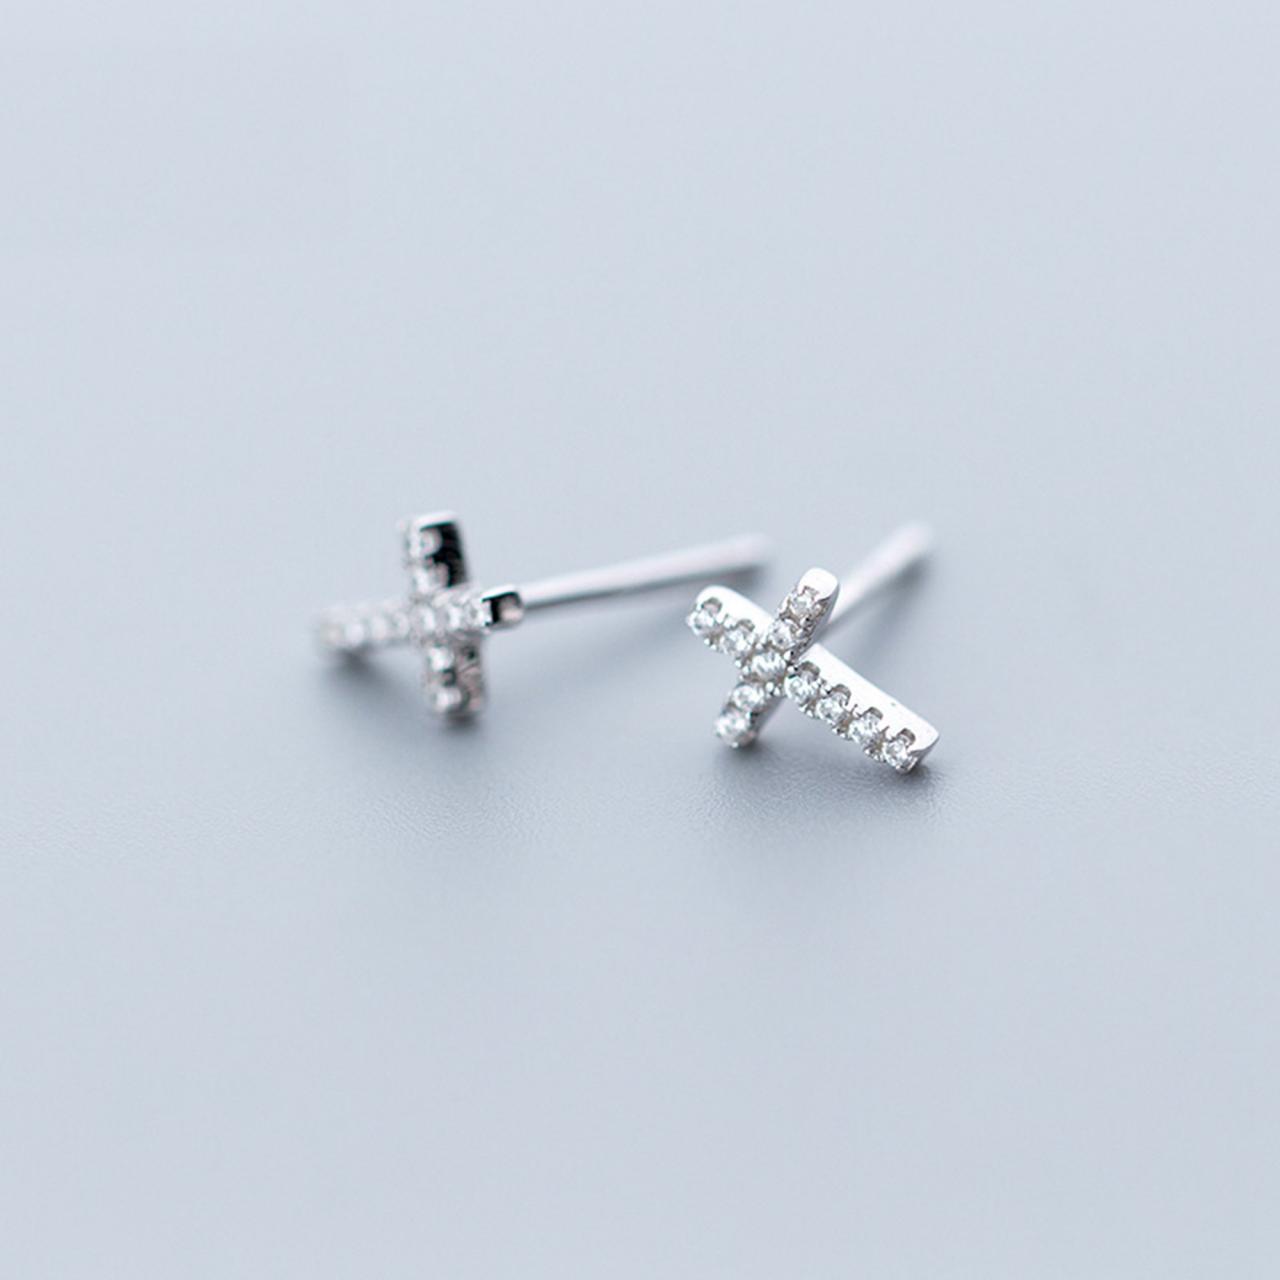 S925 Sterling Silver Cz Pave Cross Ear Studs, Cross Post Earrings, Women Earrings, Everyday Earrings, Ear Post, Cross Earrings